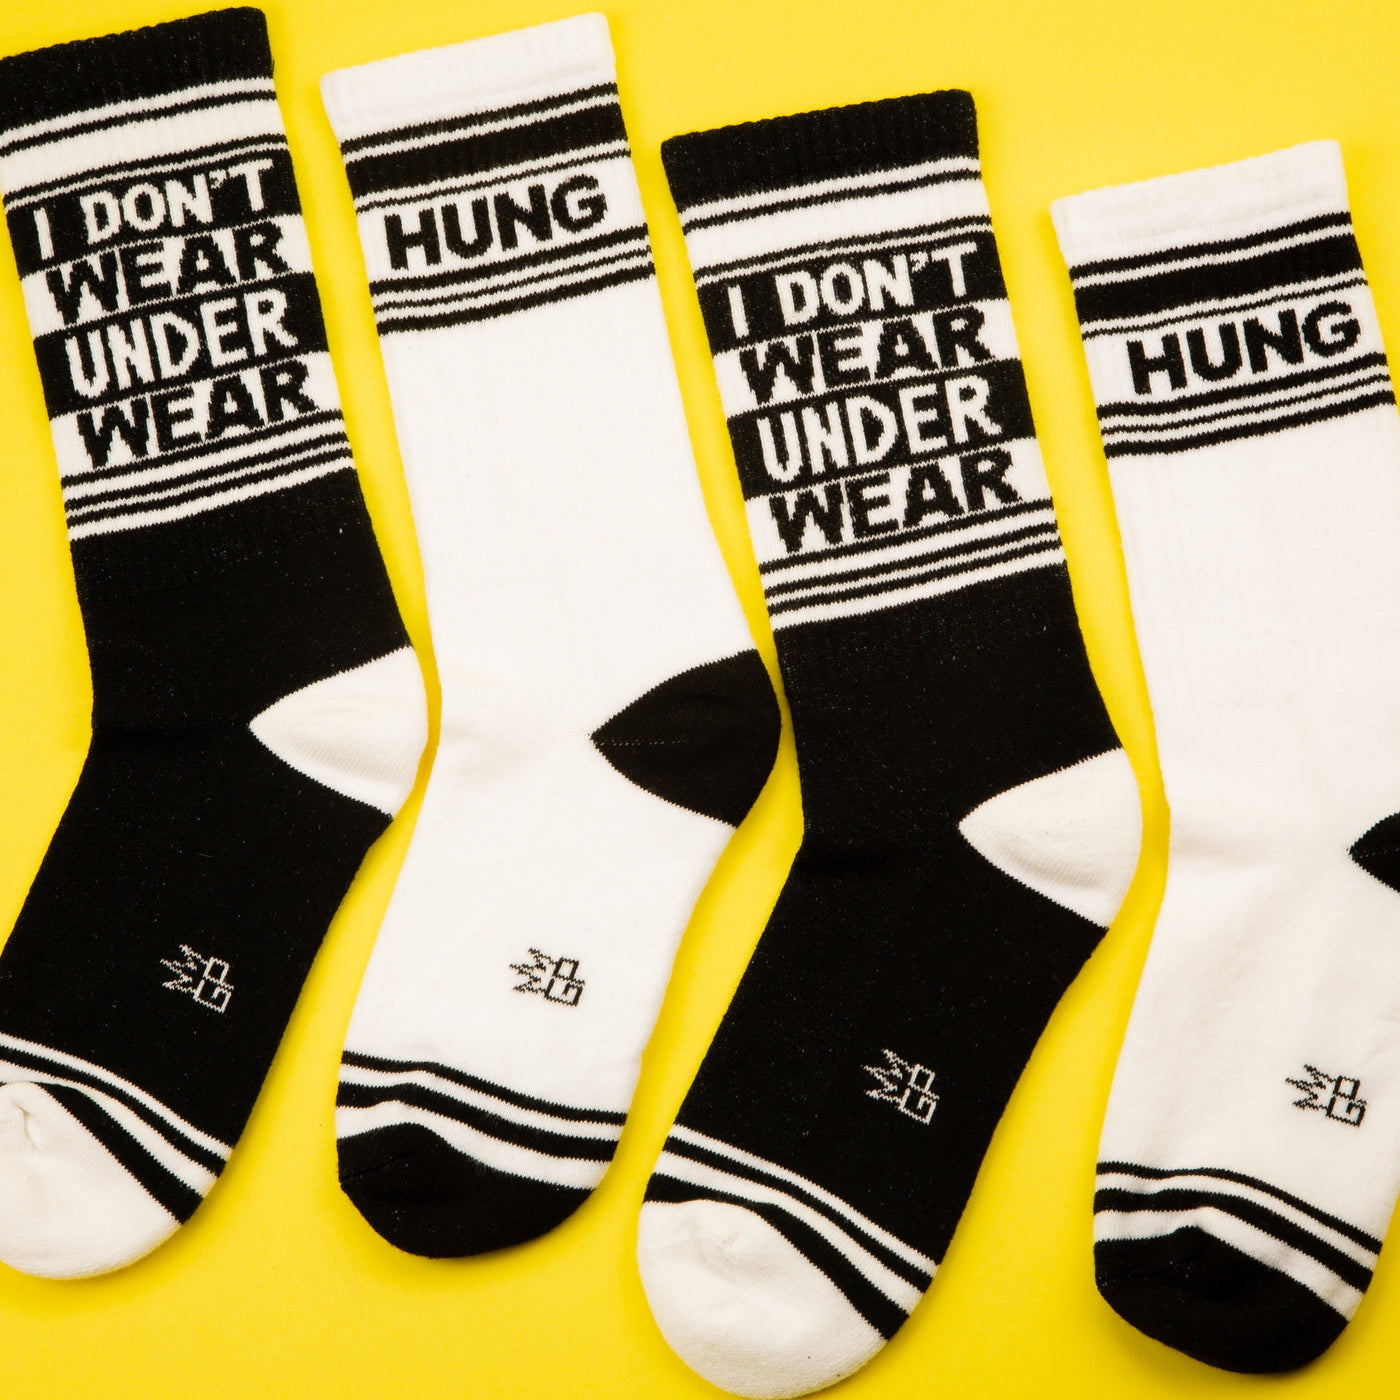 Hung gym socks